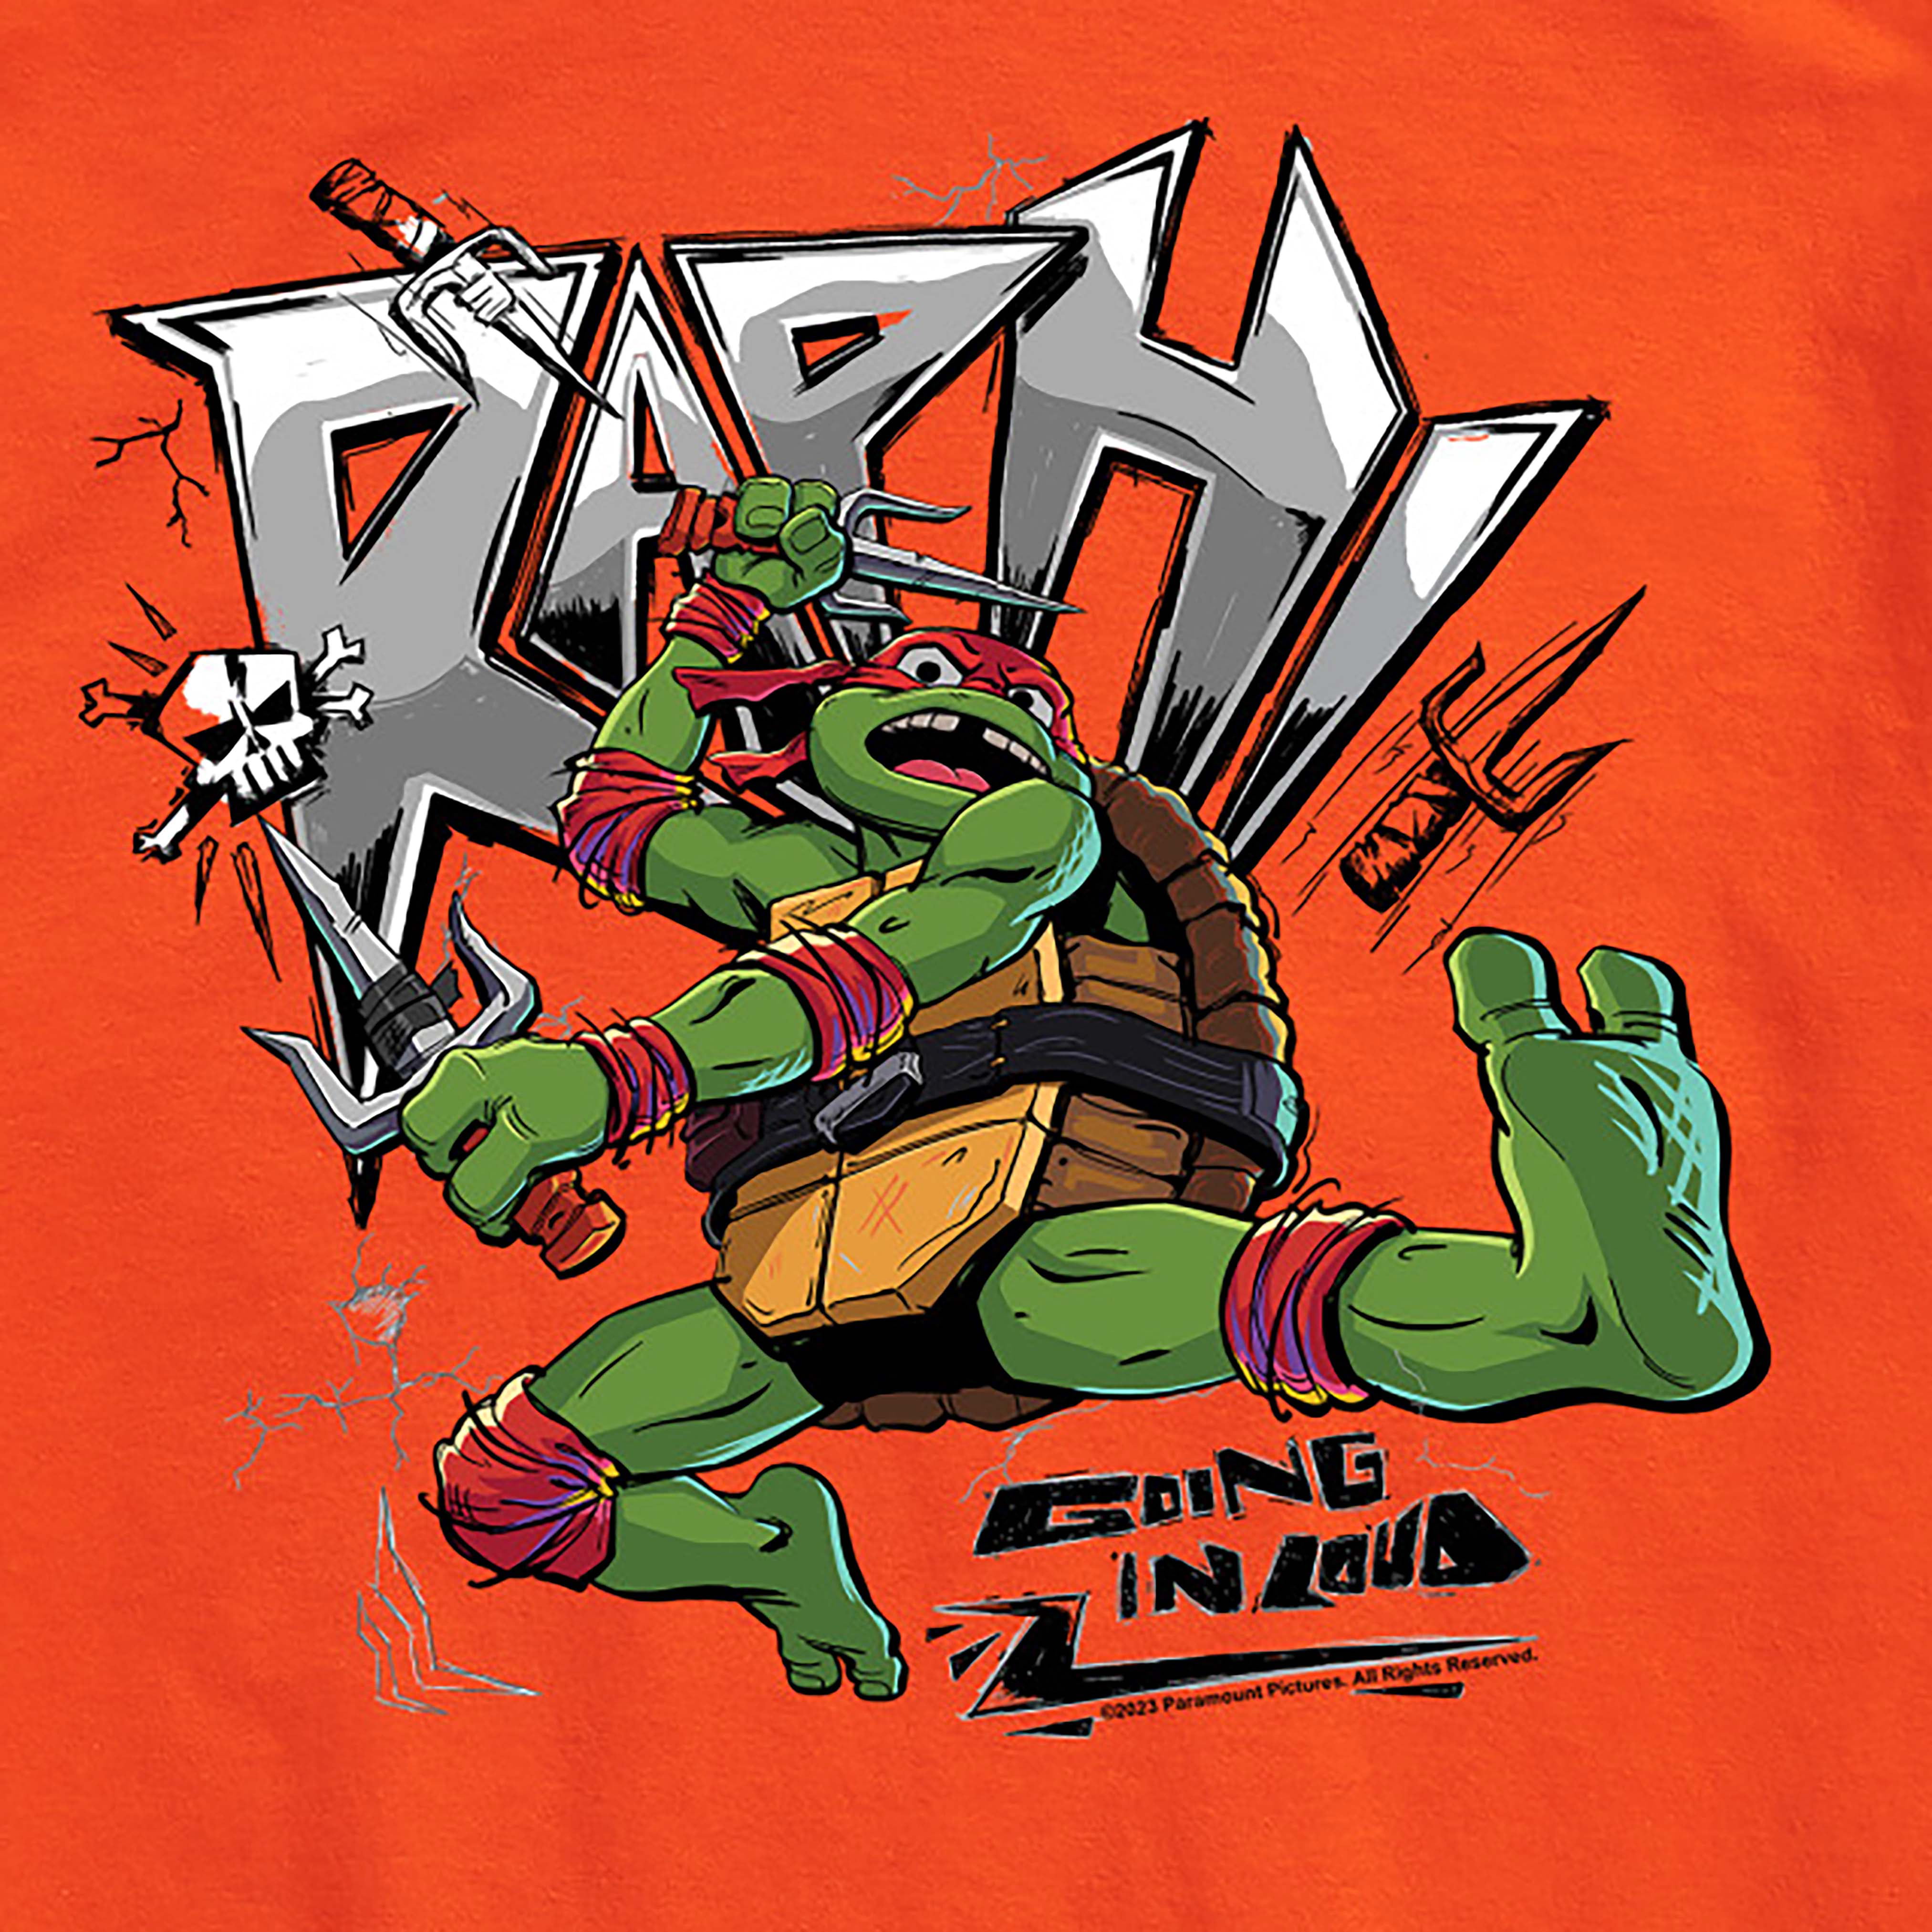 New Teenage Mutant Ninja Turtles Shirts Draw Inspiration From JUDAS PRIEST  & MOTÖRHEAD